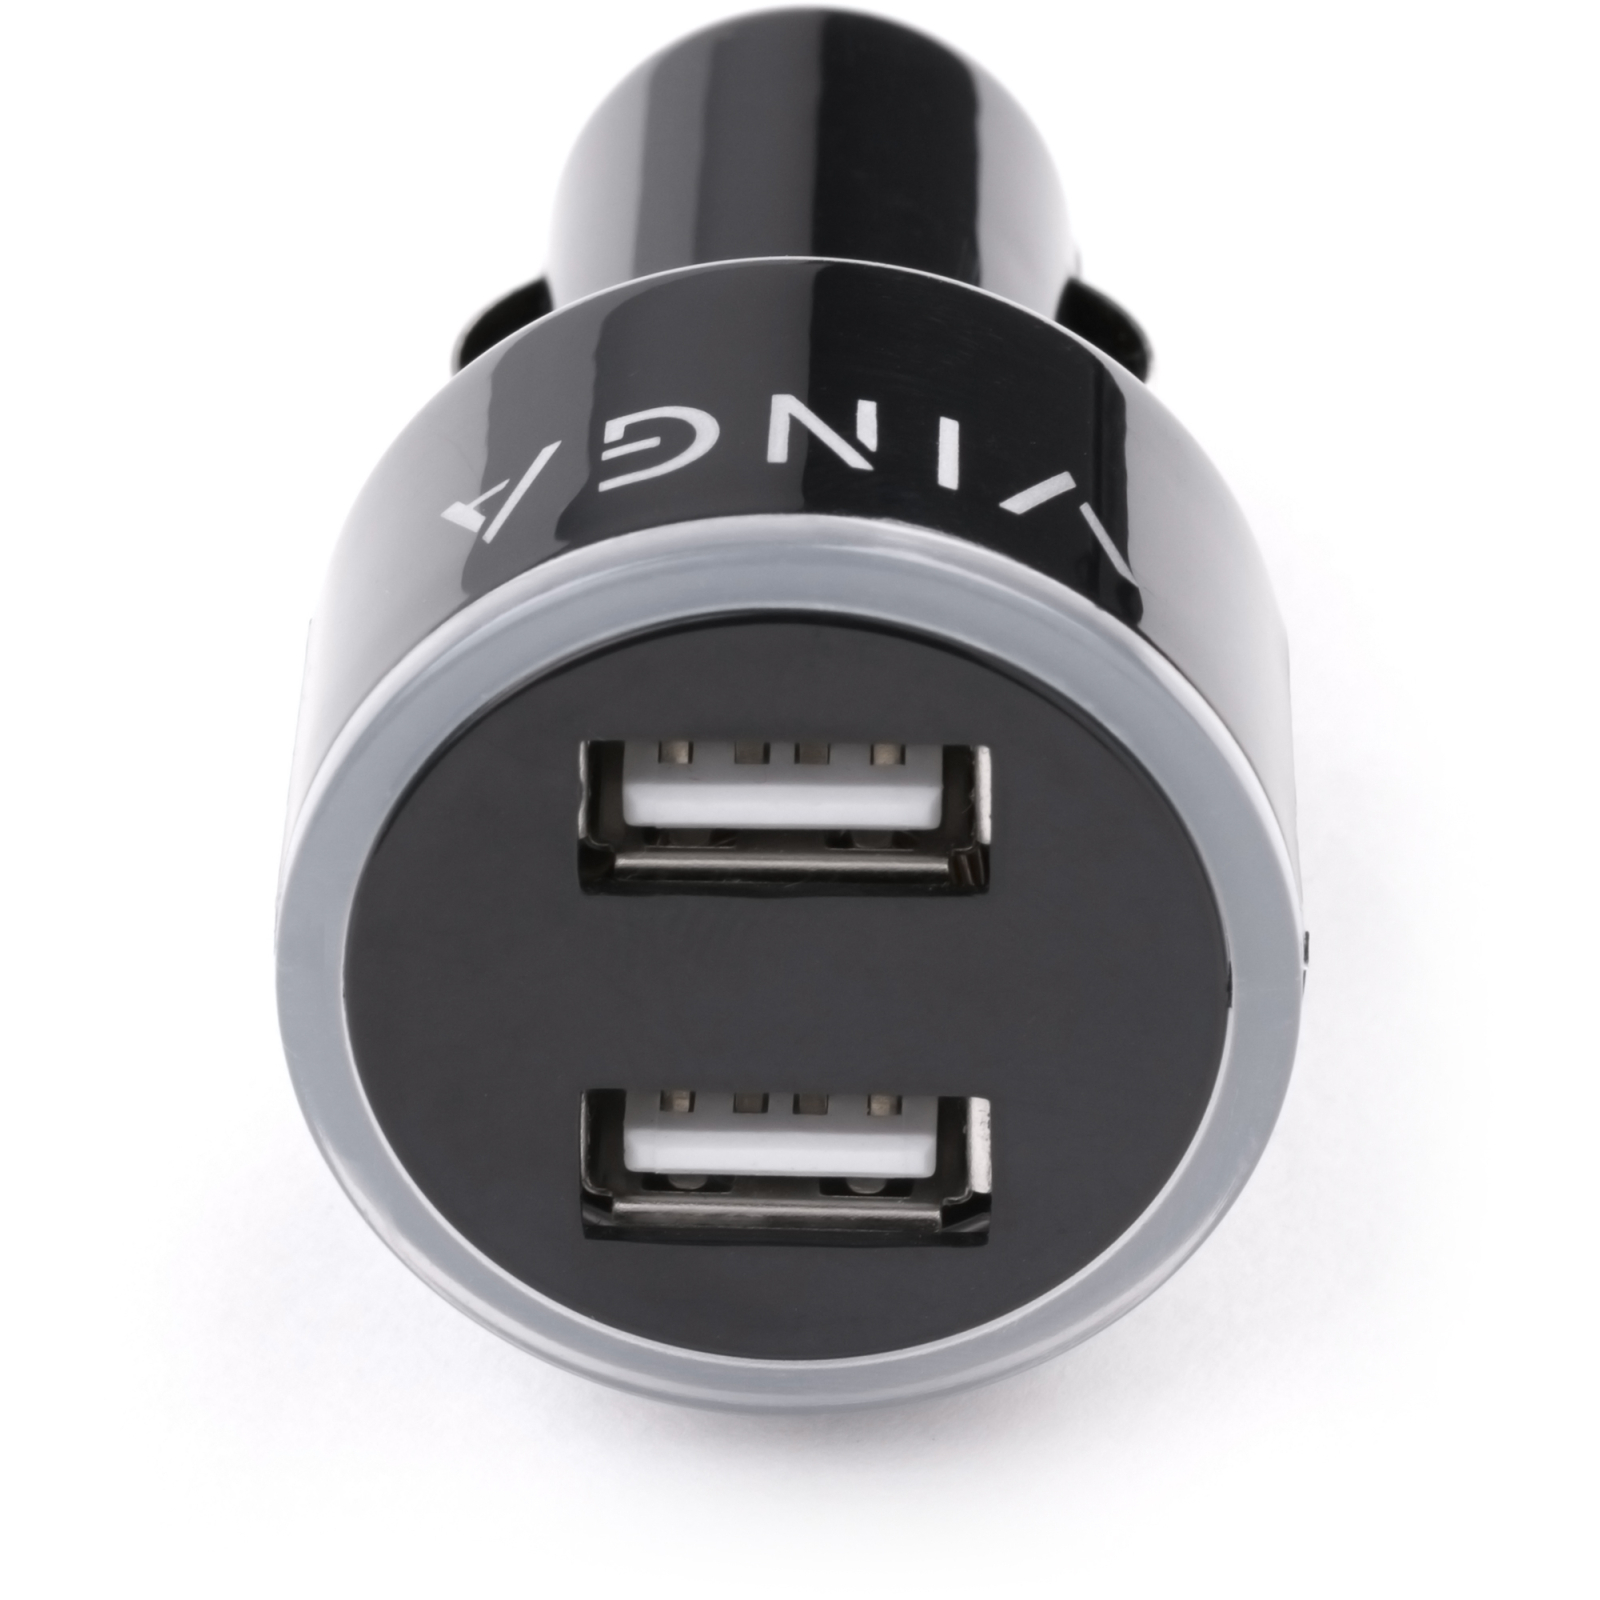 Зарядное устройство Vinga CB 333 USB*2ports 2.1A (APA0333BK) изображение 7